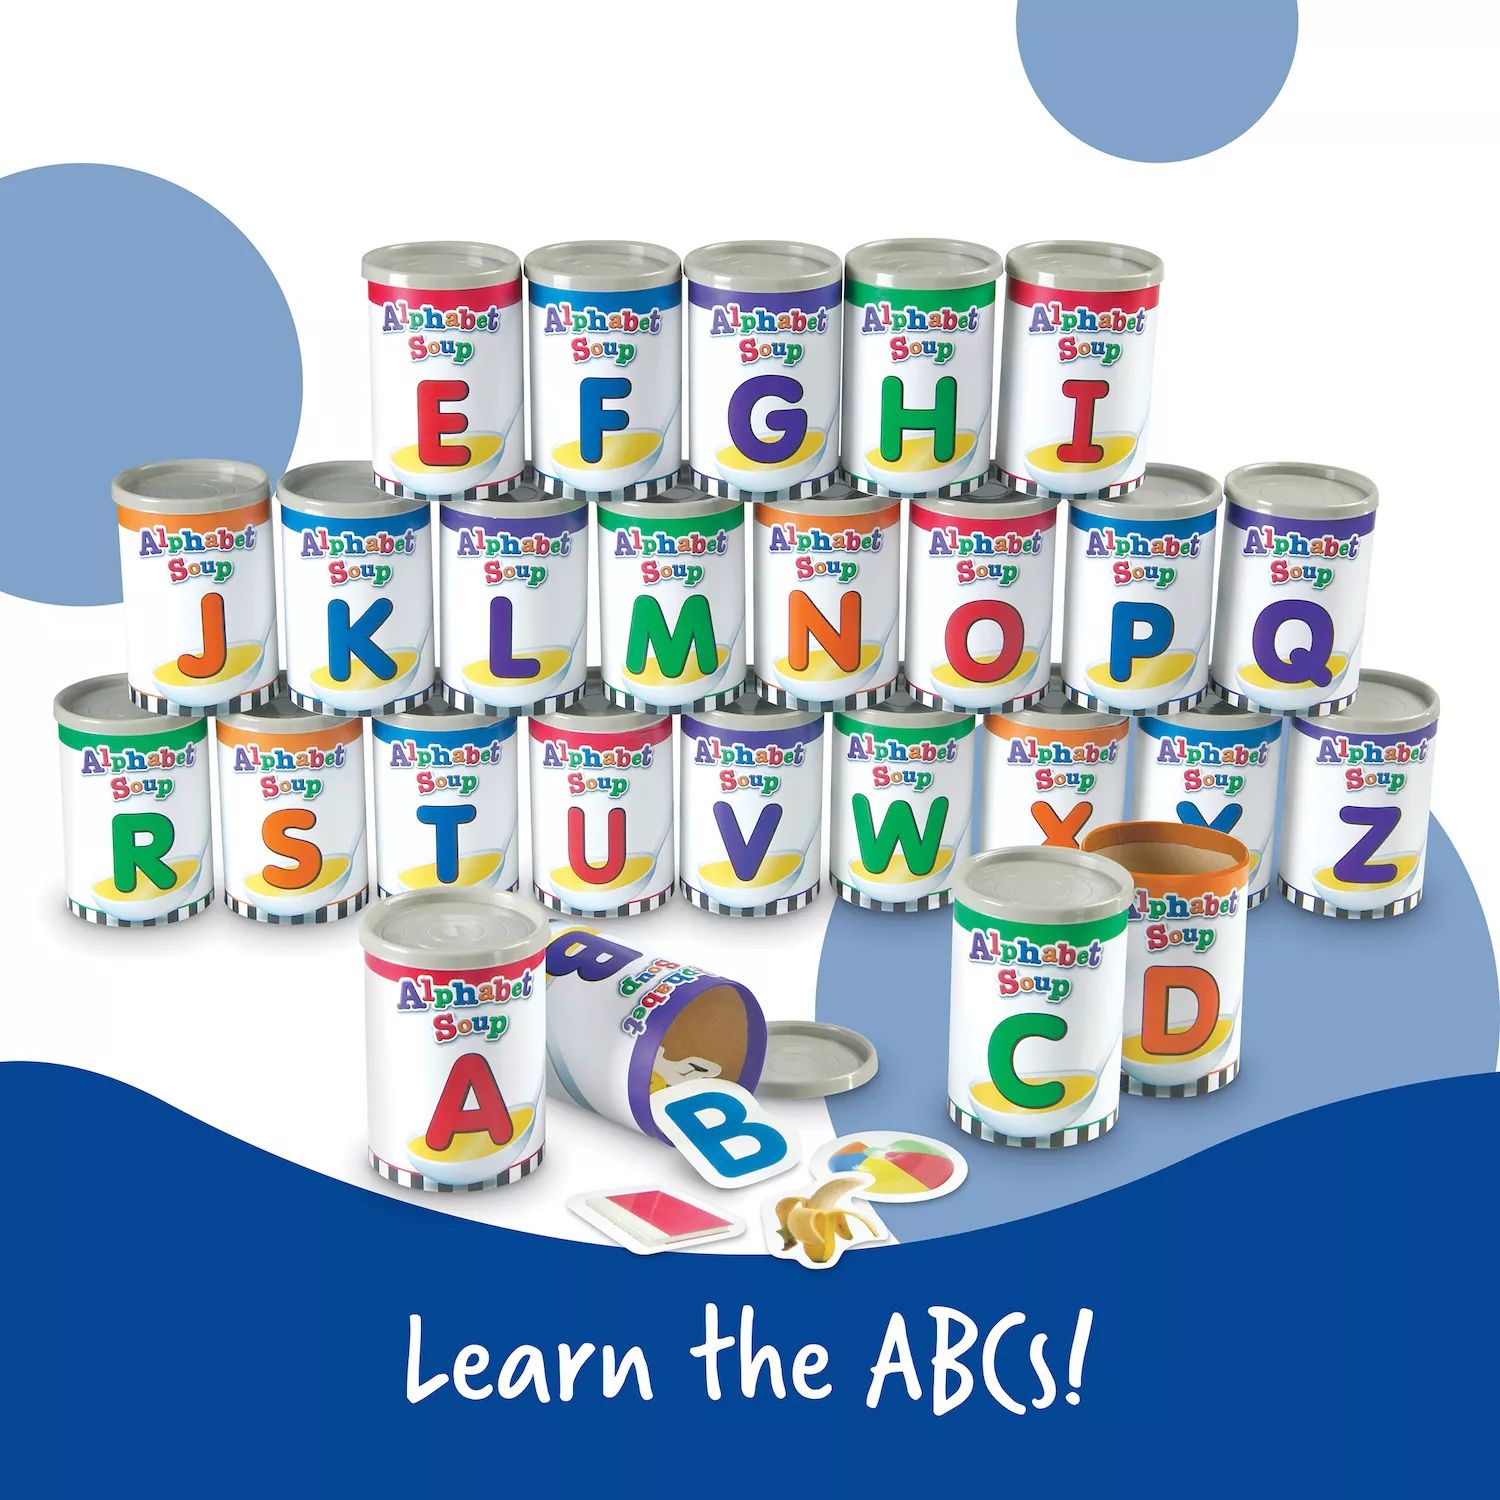 Набор для сортировки супов по алфавиту по учебным ресурсам Learning Resources развивающий набор learning resources для сортировки цветные тарелки